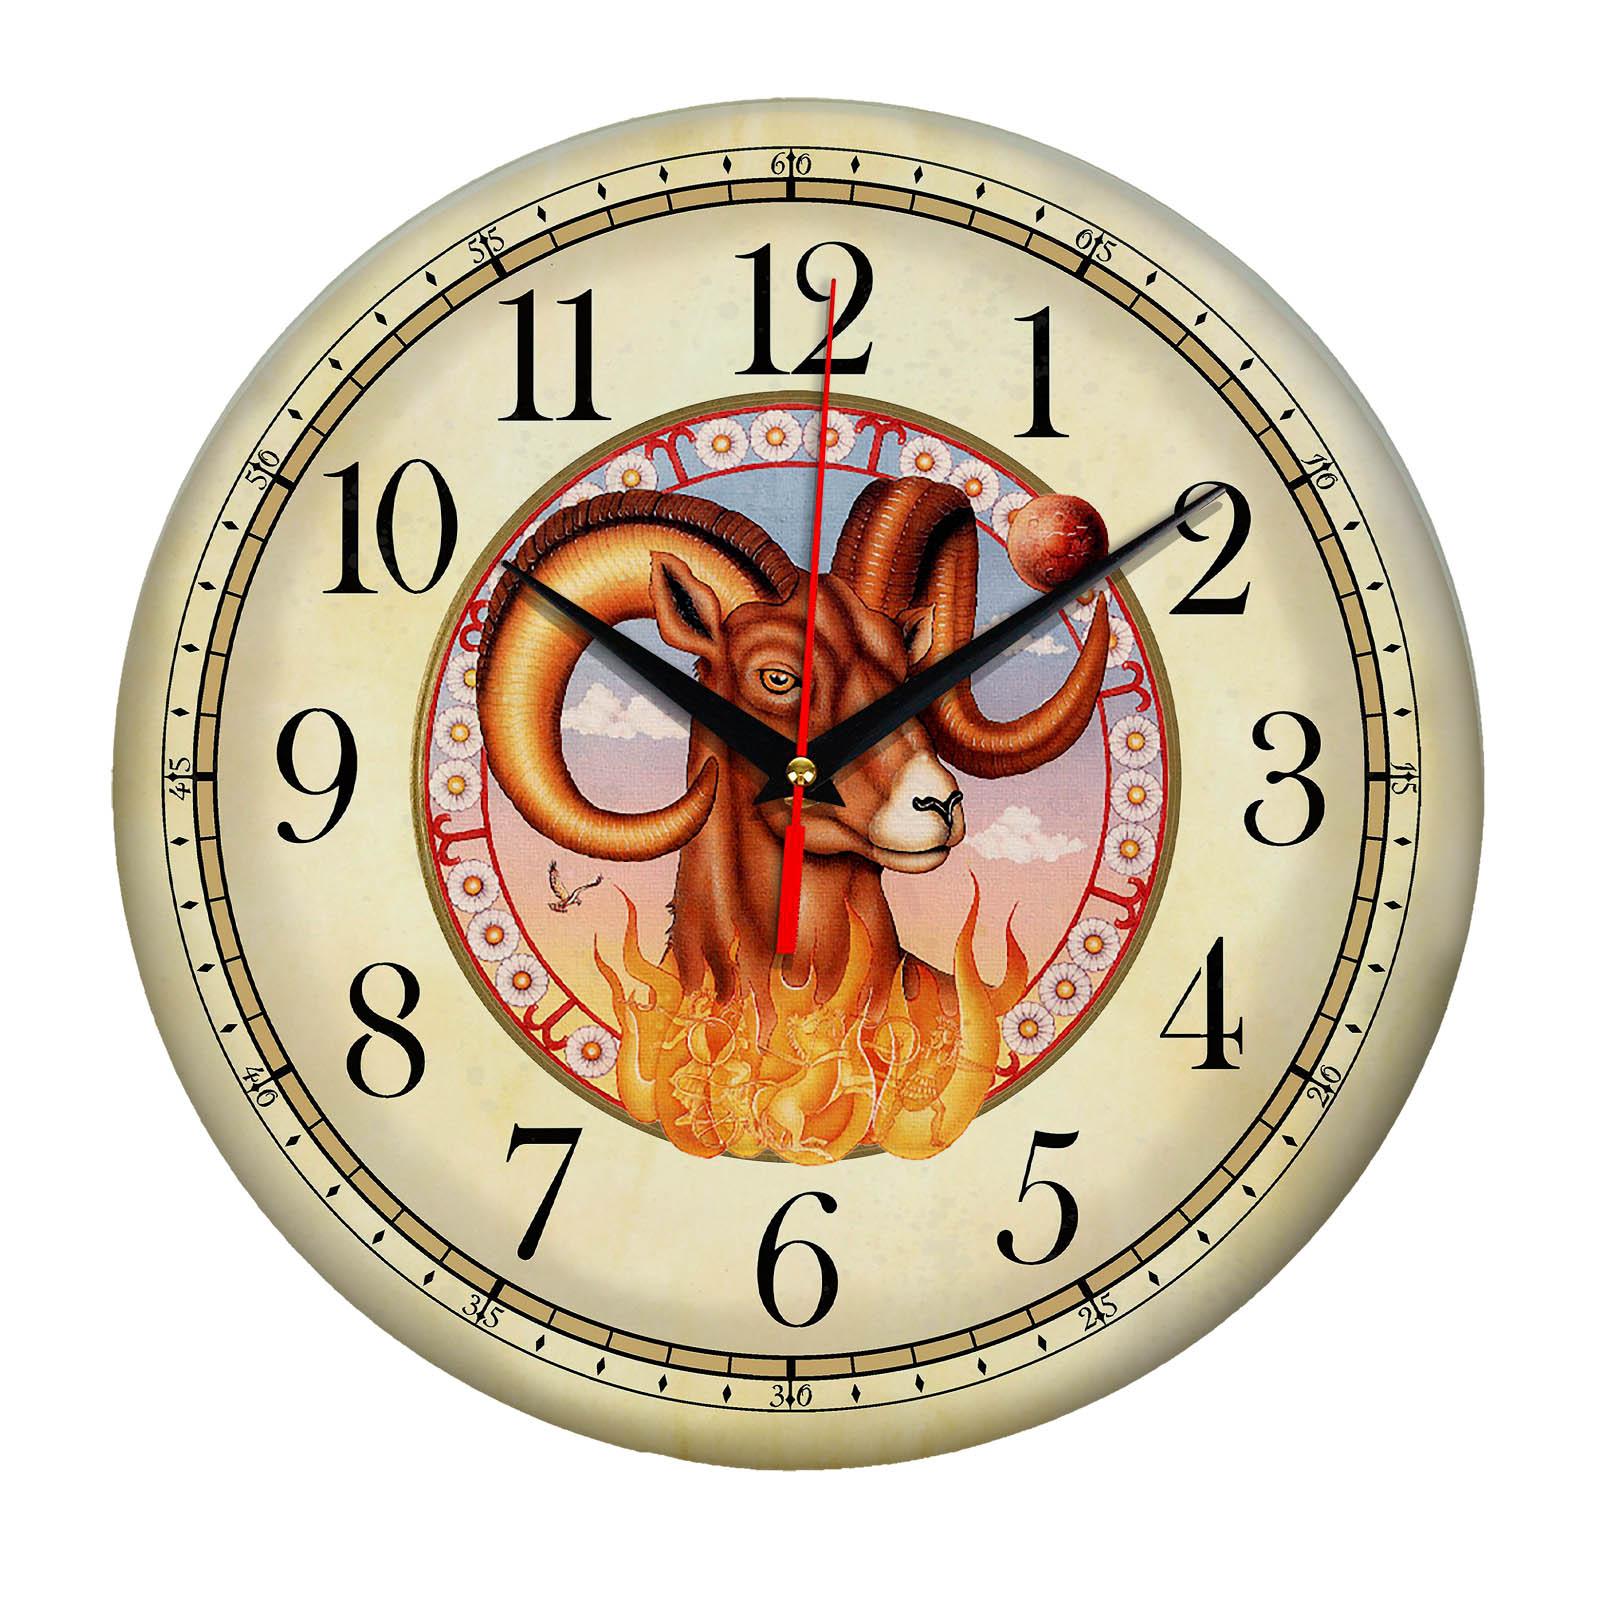 Часы zodiac. Часы Zodiac 7913. Настенные часы "знаки зодиака". Часы сувенирные. Часы настенные Зодиак.